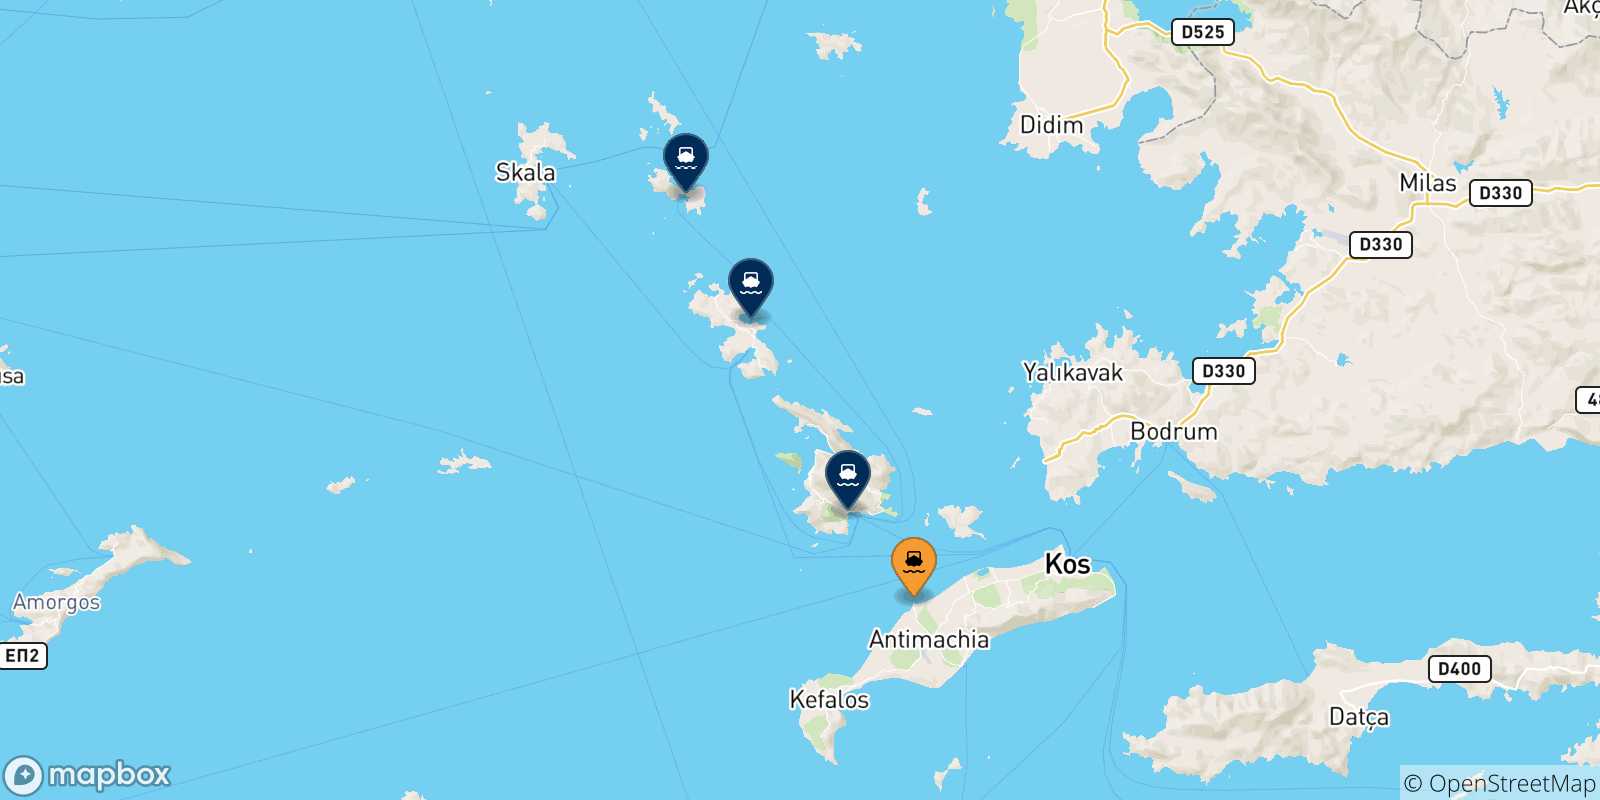 Mappa delle possibili rotte tra Mastihari (Kos) e la Grecia